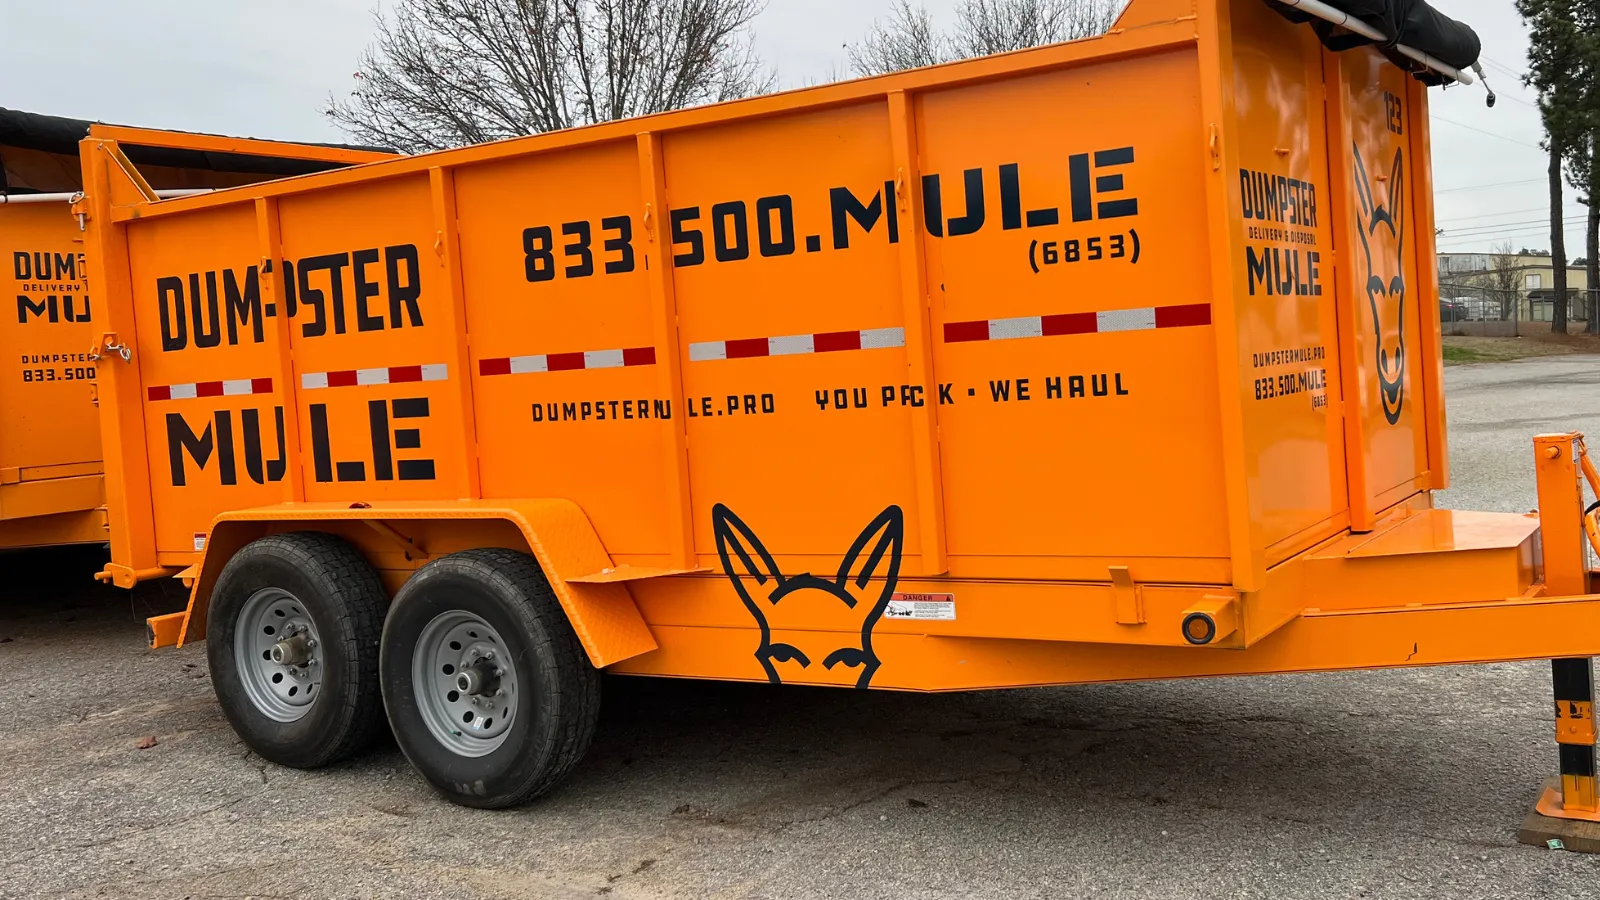 Dumpster Mule VS Other Big Brand Dumpster Rental Services